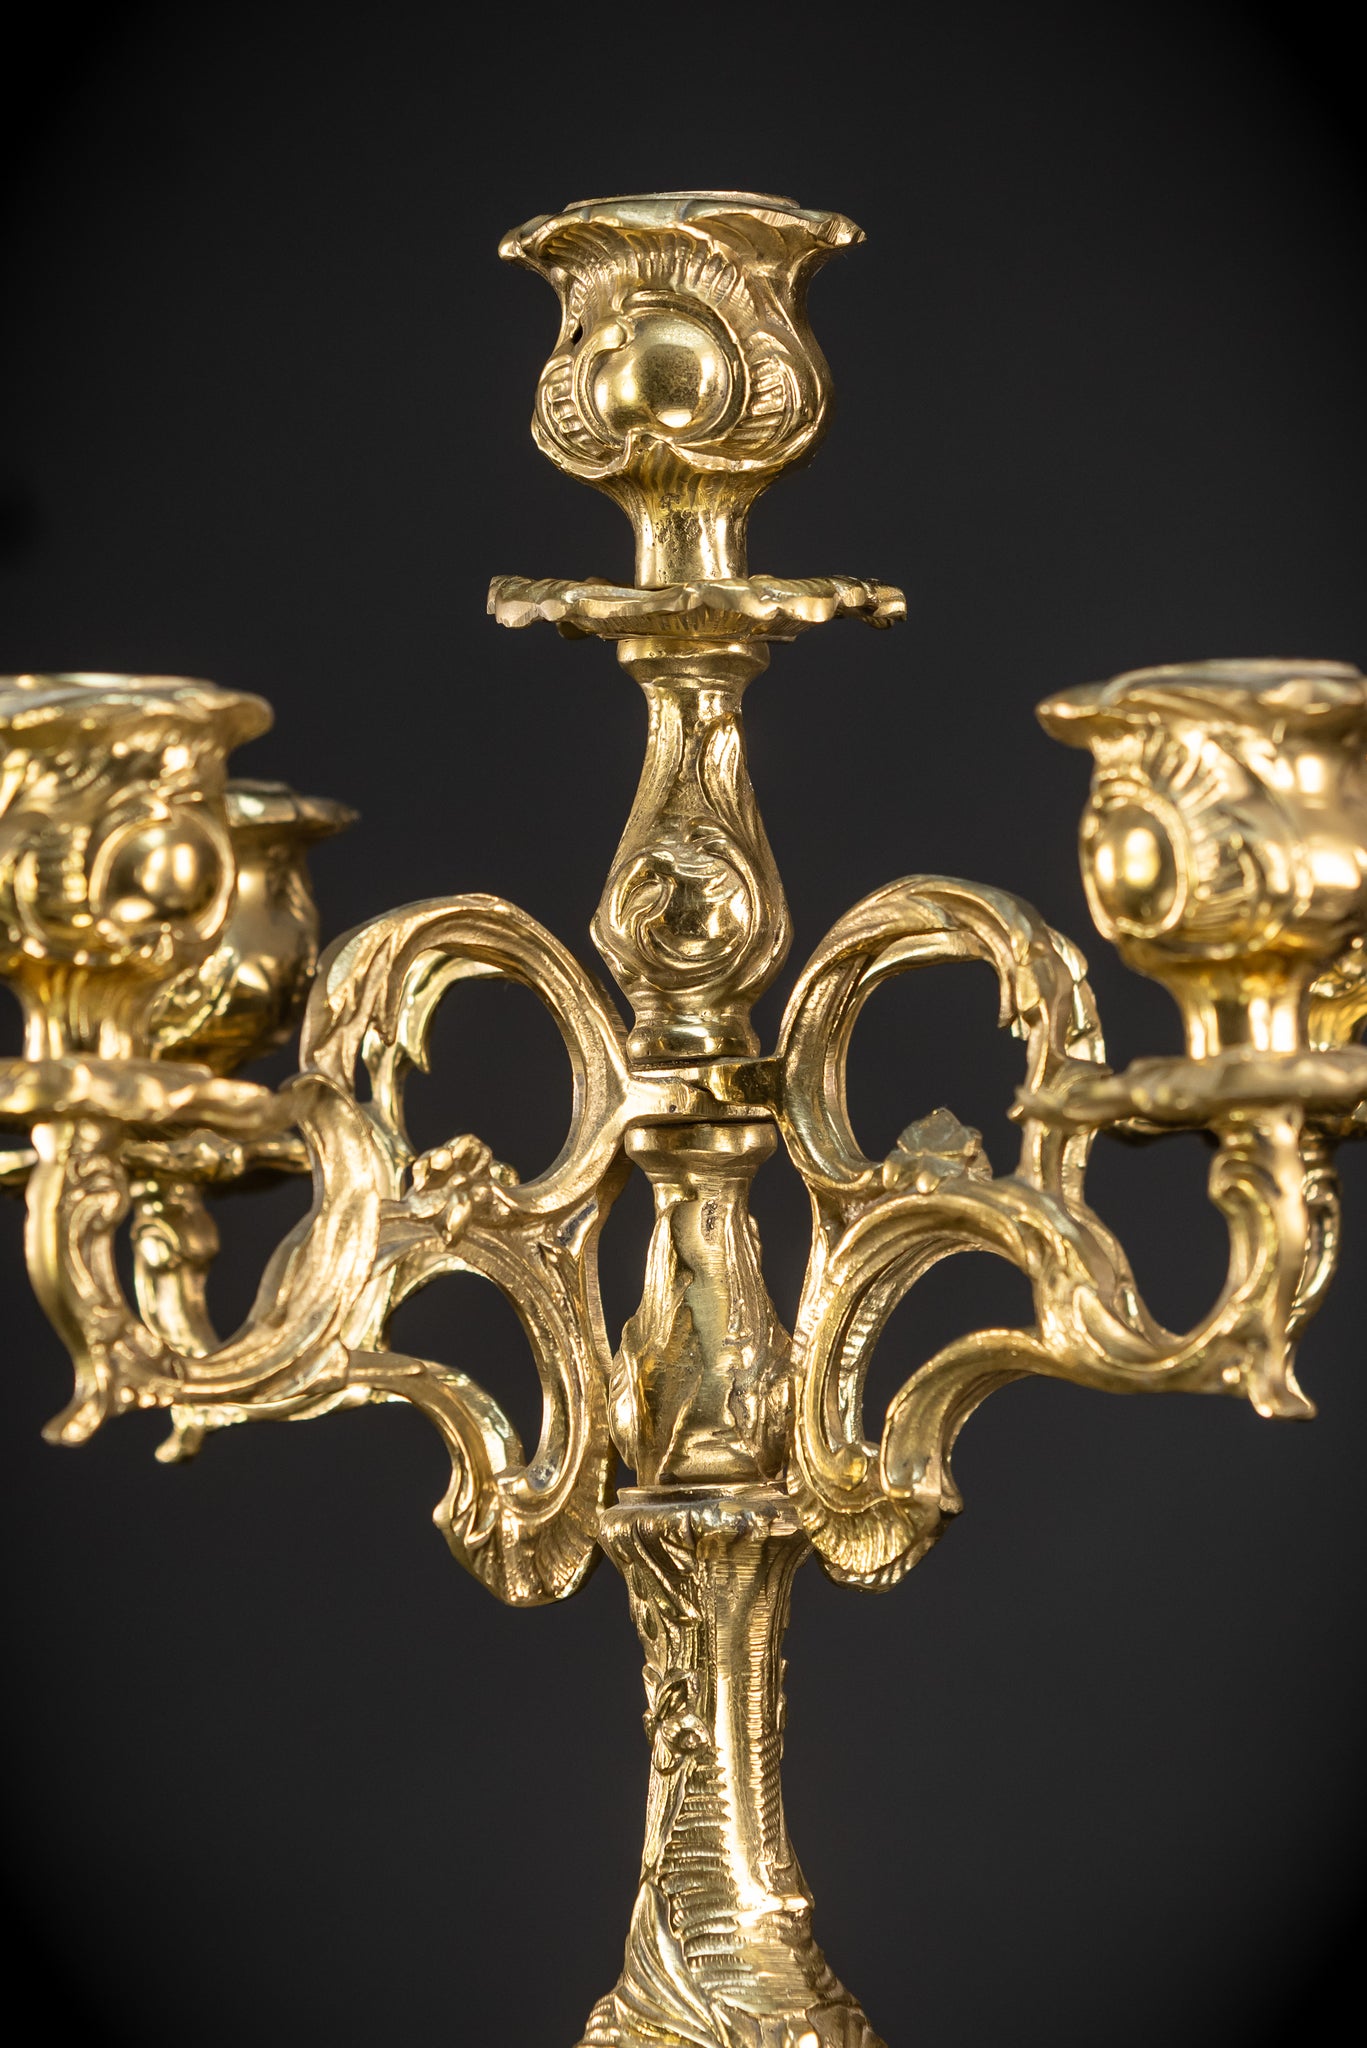 Pair of Bronze Candelabras - 5 Lights | 1900s Vintage | 16.1" / 41 cm